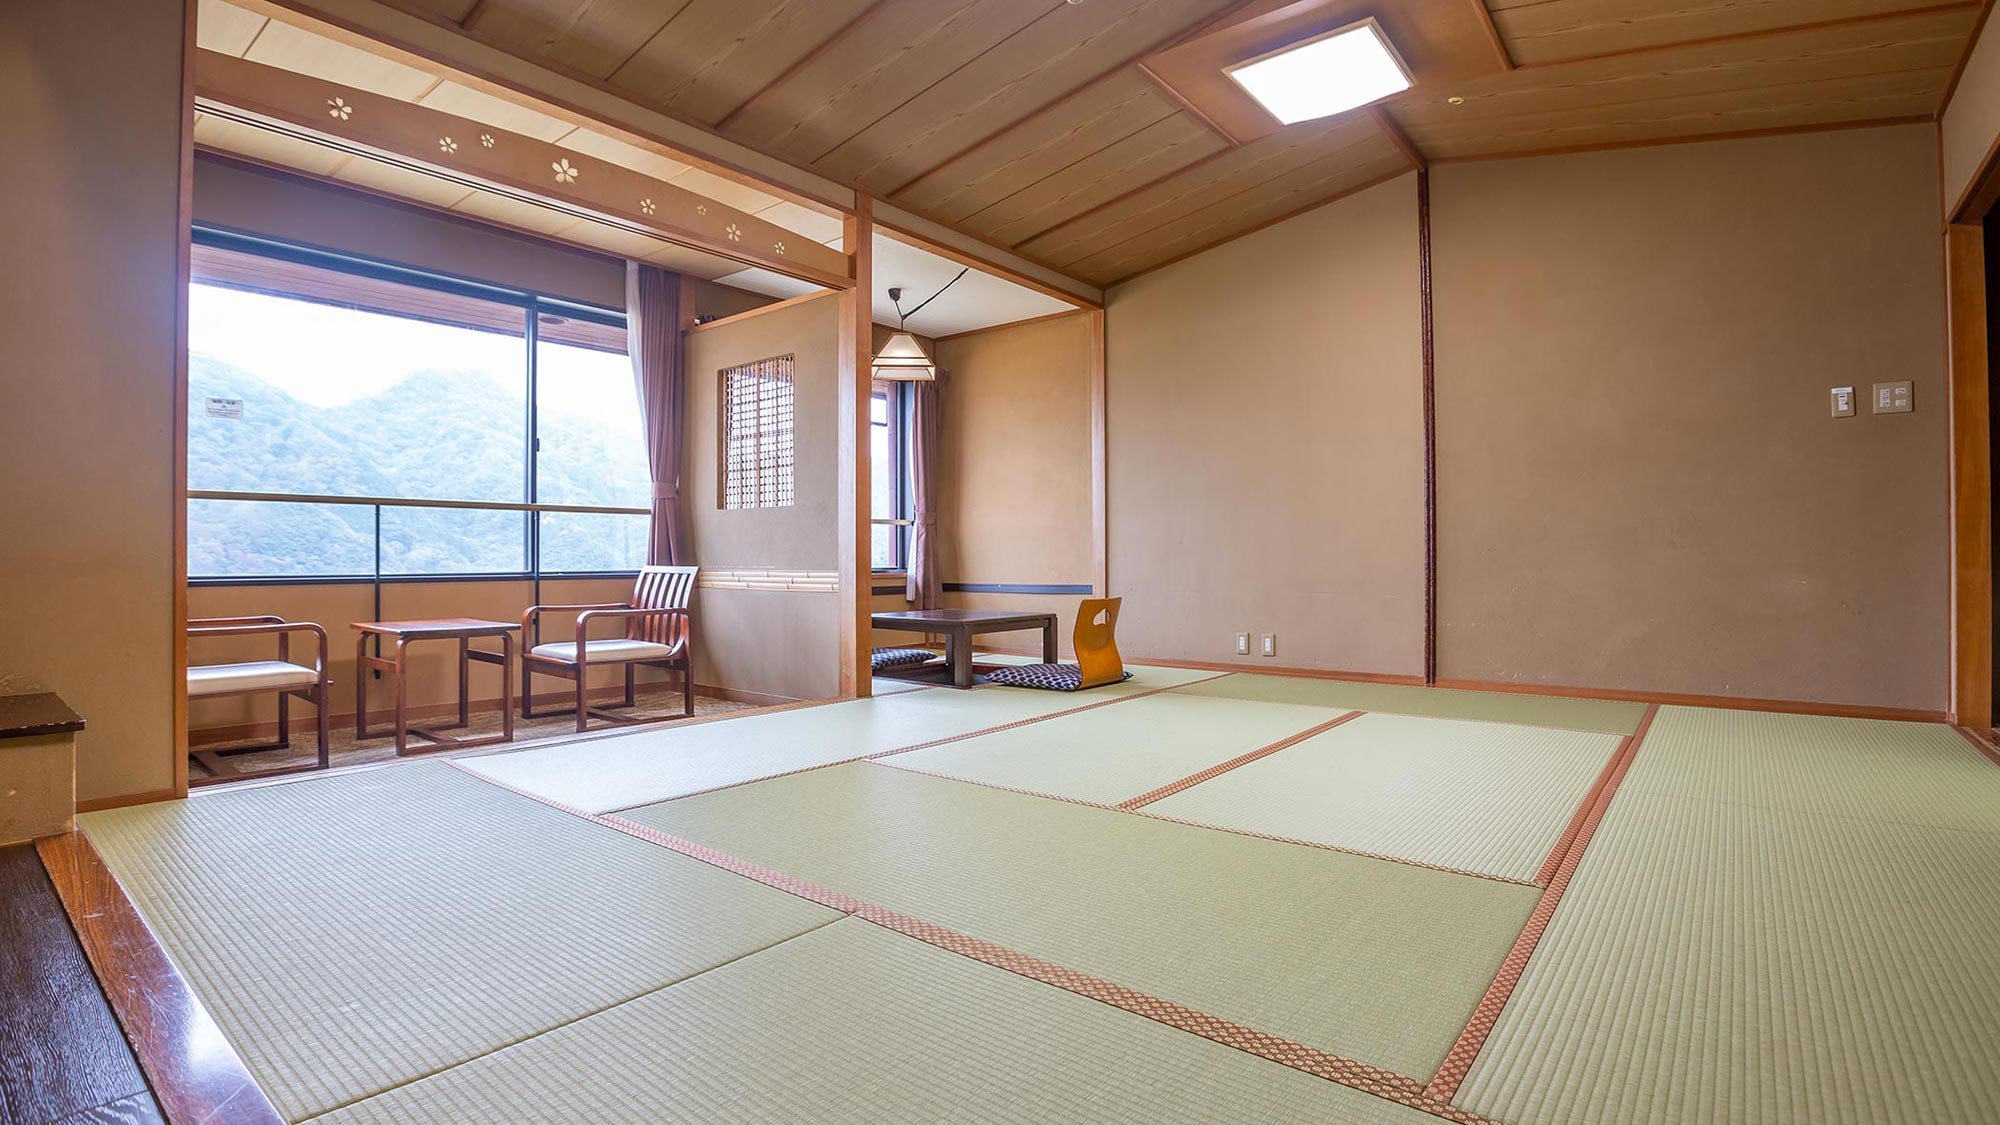 还有可以舒展双腿放松的日式房间、易于使用的西式房间和复式房间。